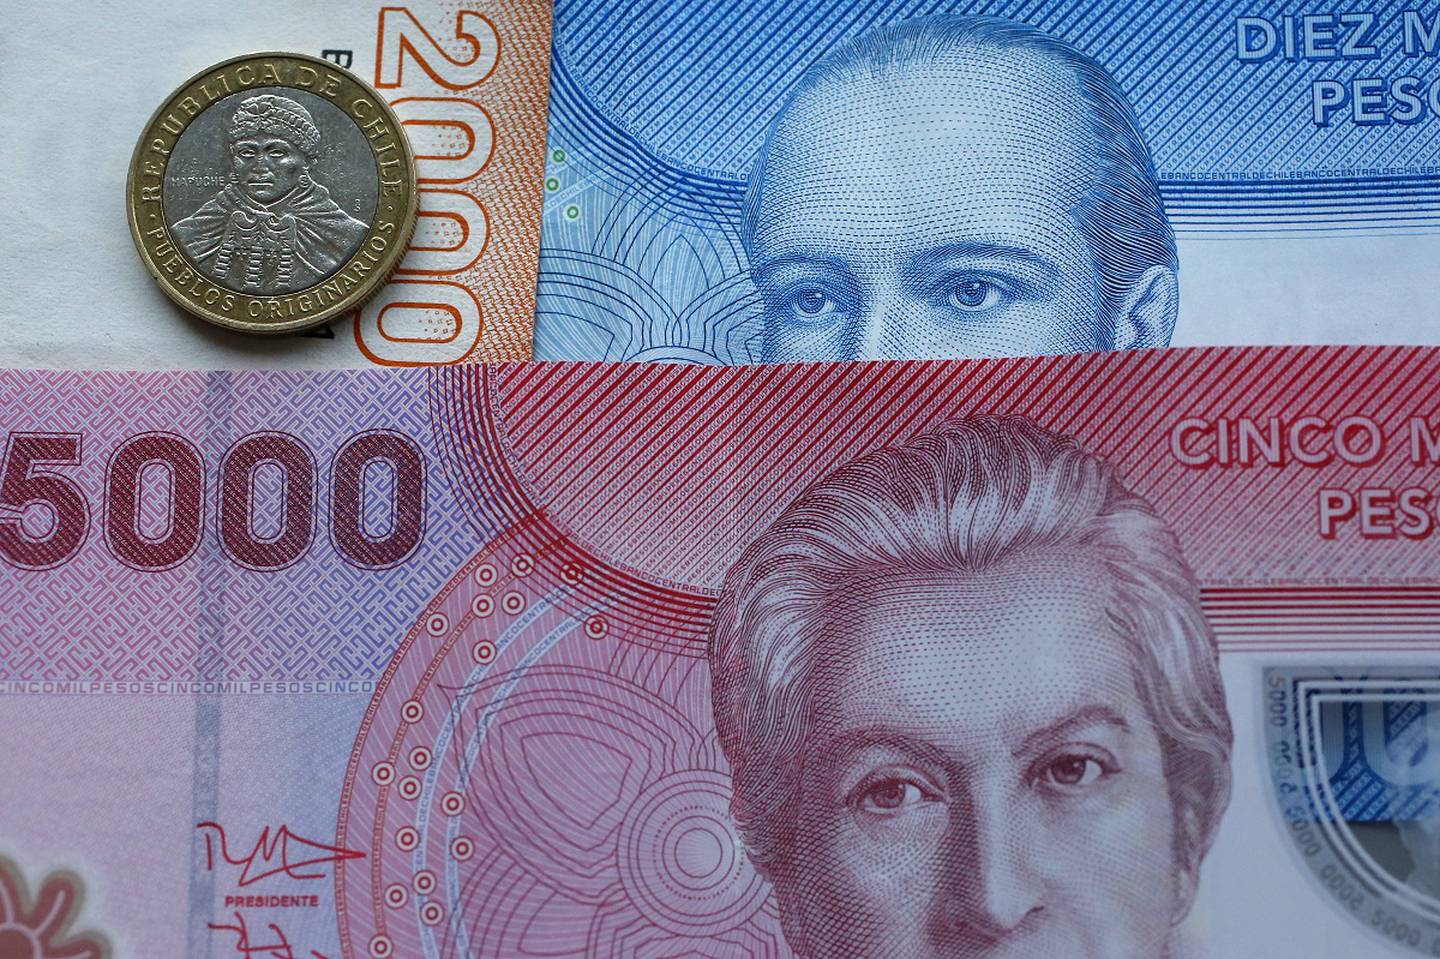 Billetes chilenos sobre una superficie con una moneda chilena de cien pesos.